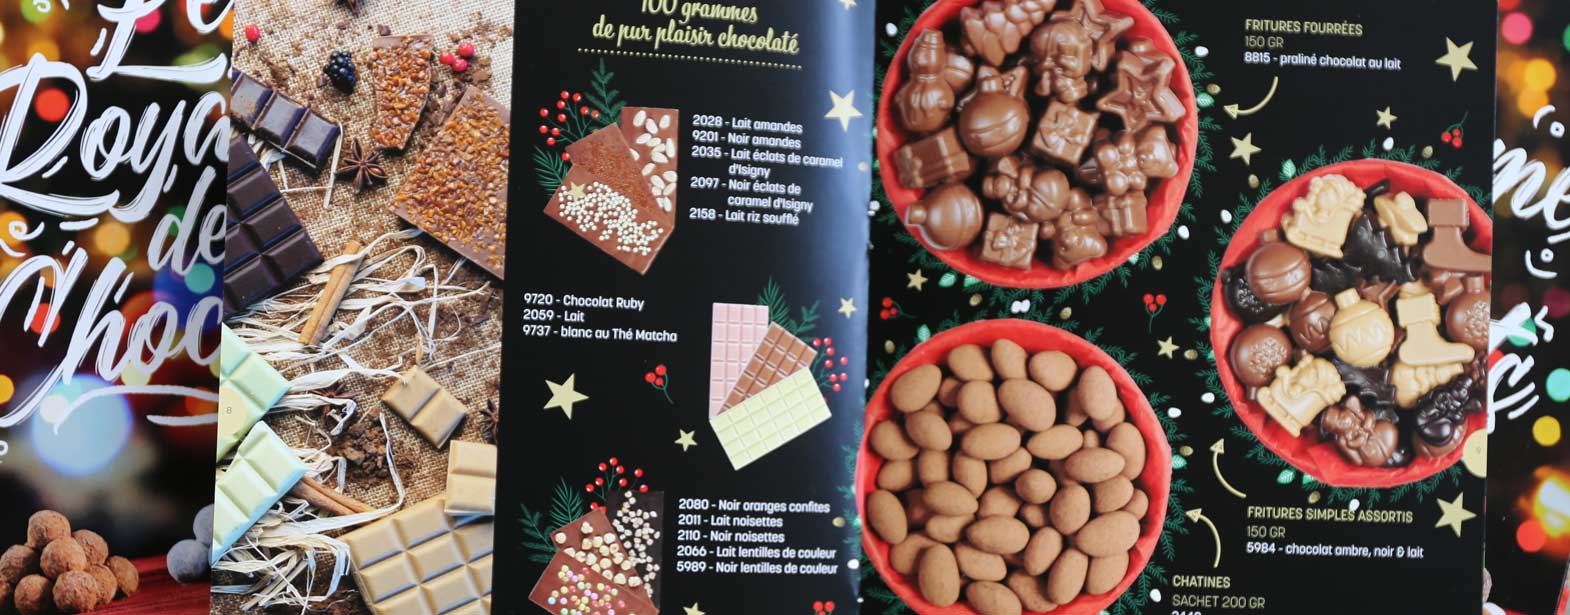 Située à Tucquegnieux, en Lorraine, à quelques kilomètres de la frontière luxembourgeoise, la Chocolaterie du Luxembourg propose une large gamme de chocolats.